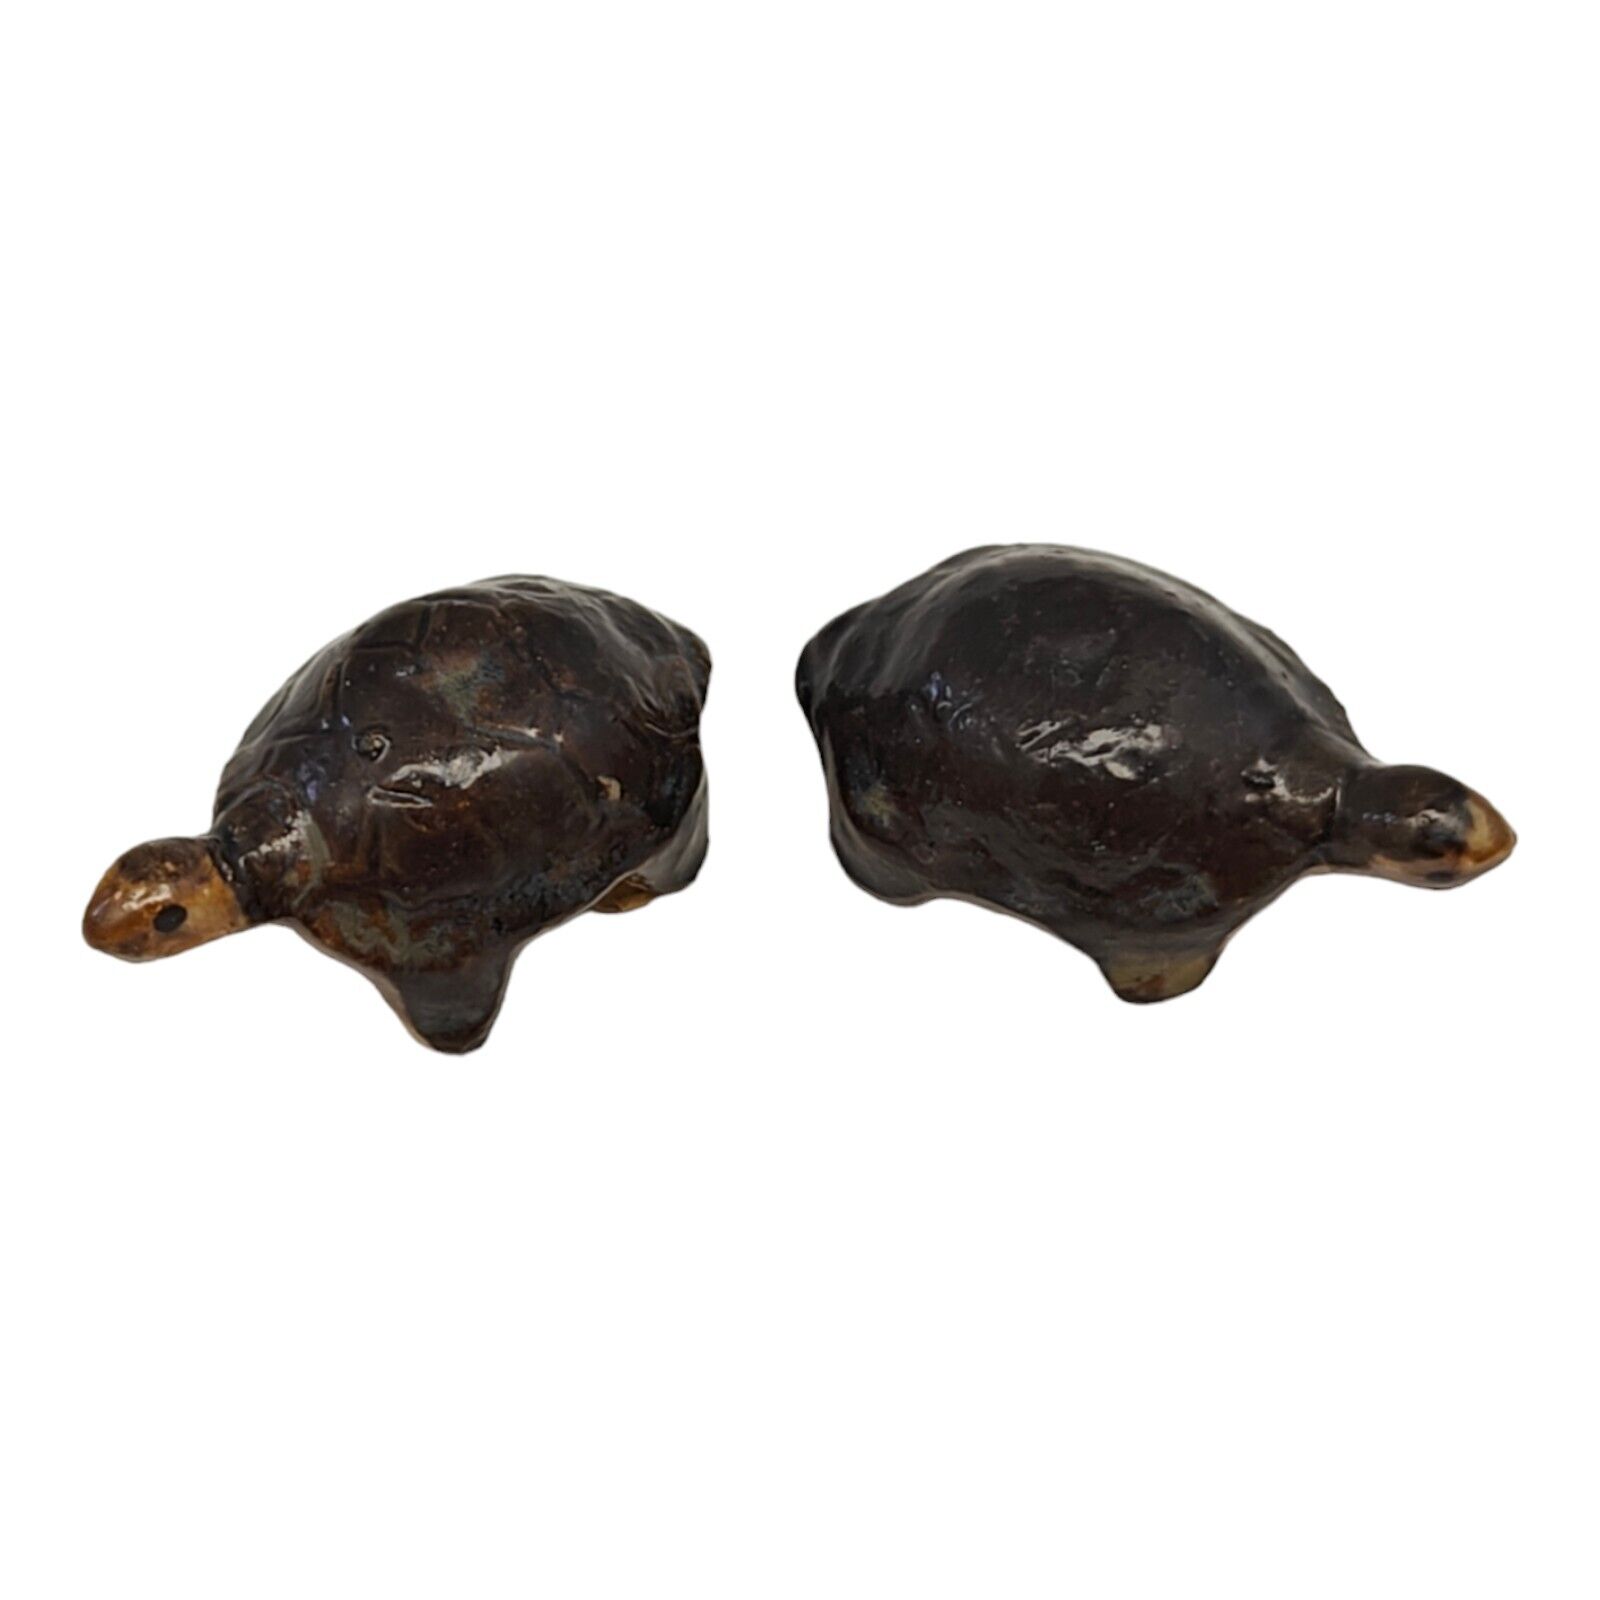 Vintage Miniature Ceramic Black Brown Turtle Figurines Made in Japan